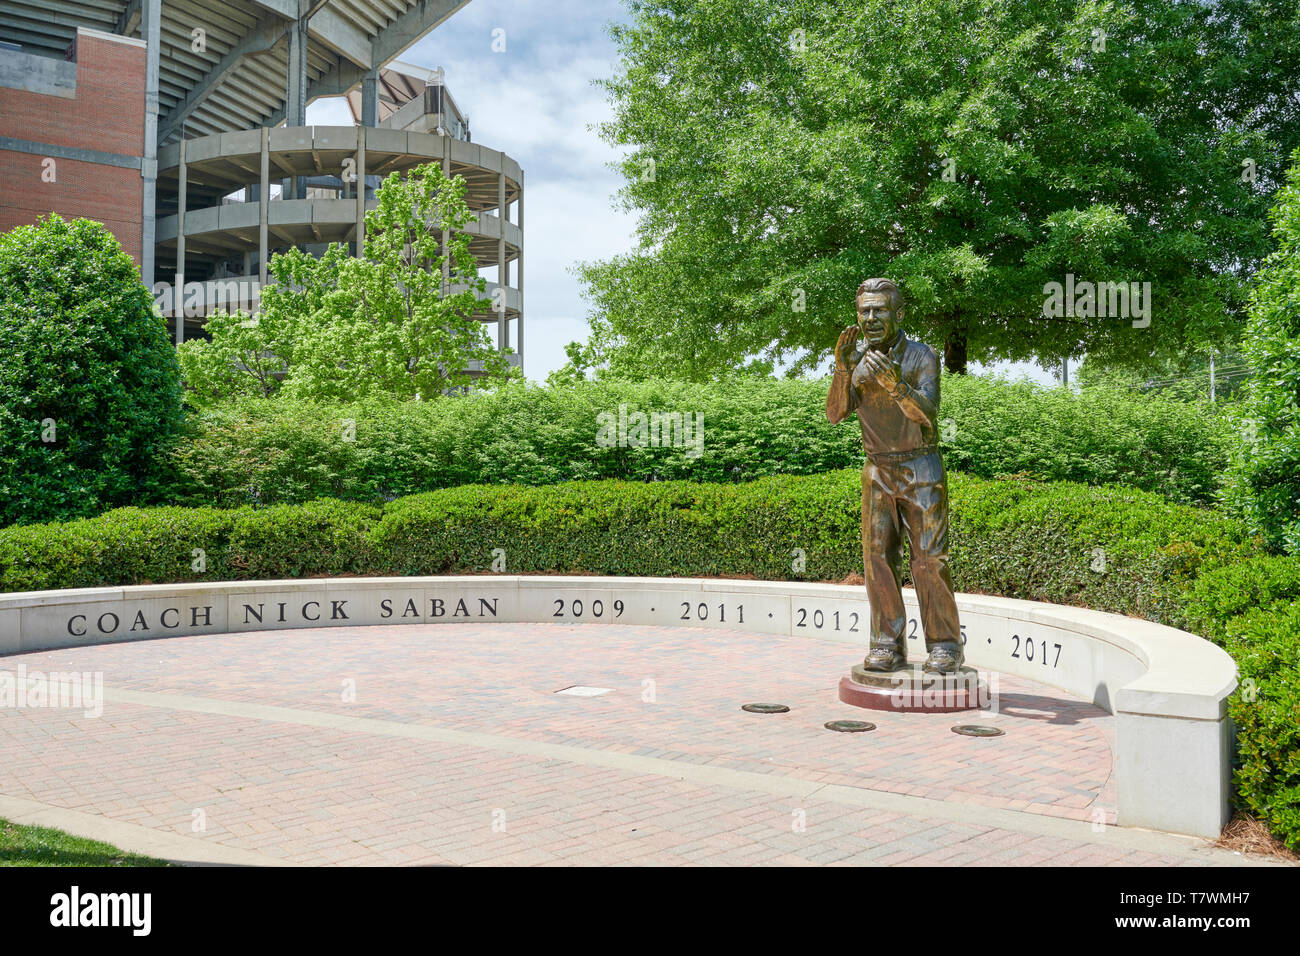 Statua in bronzo della University of Alabama allenatore di calcio Nick Saban lungo la passeggiata di campioni a Bryant-Denny Stadium, in Tuscaloosa Alabama, Stati Uniti d'America. Foto Stock